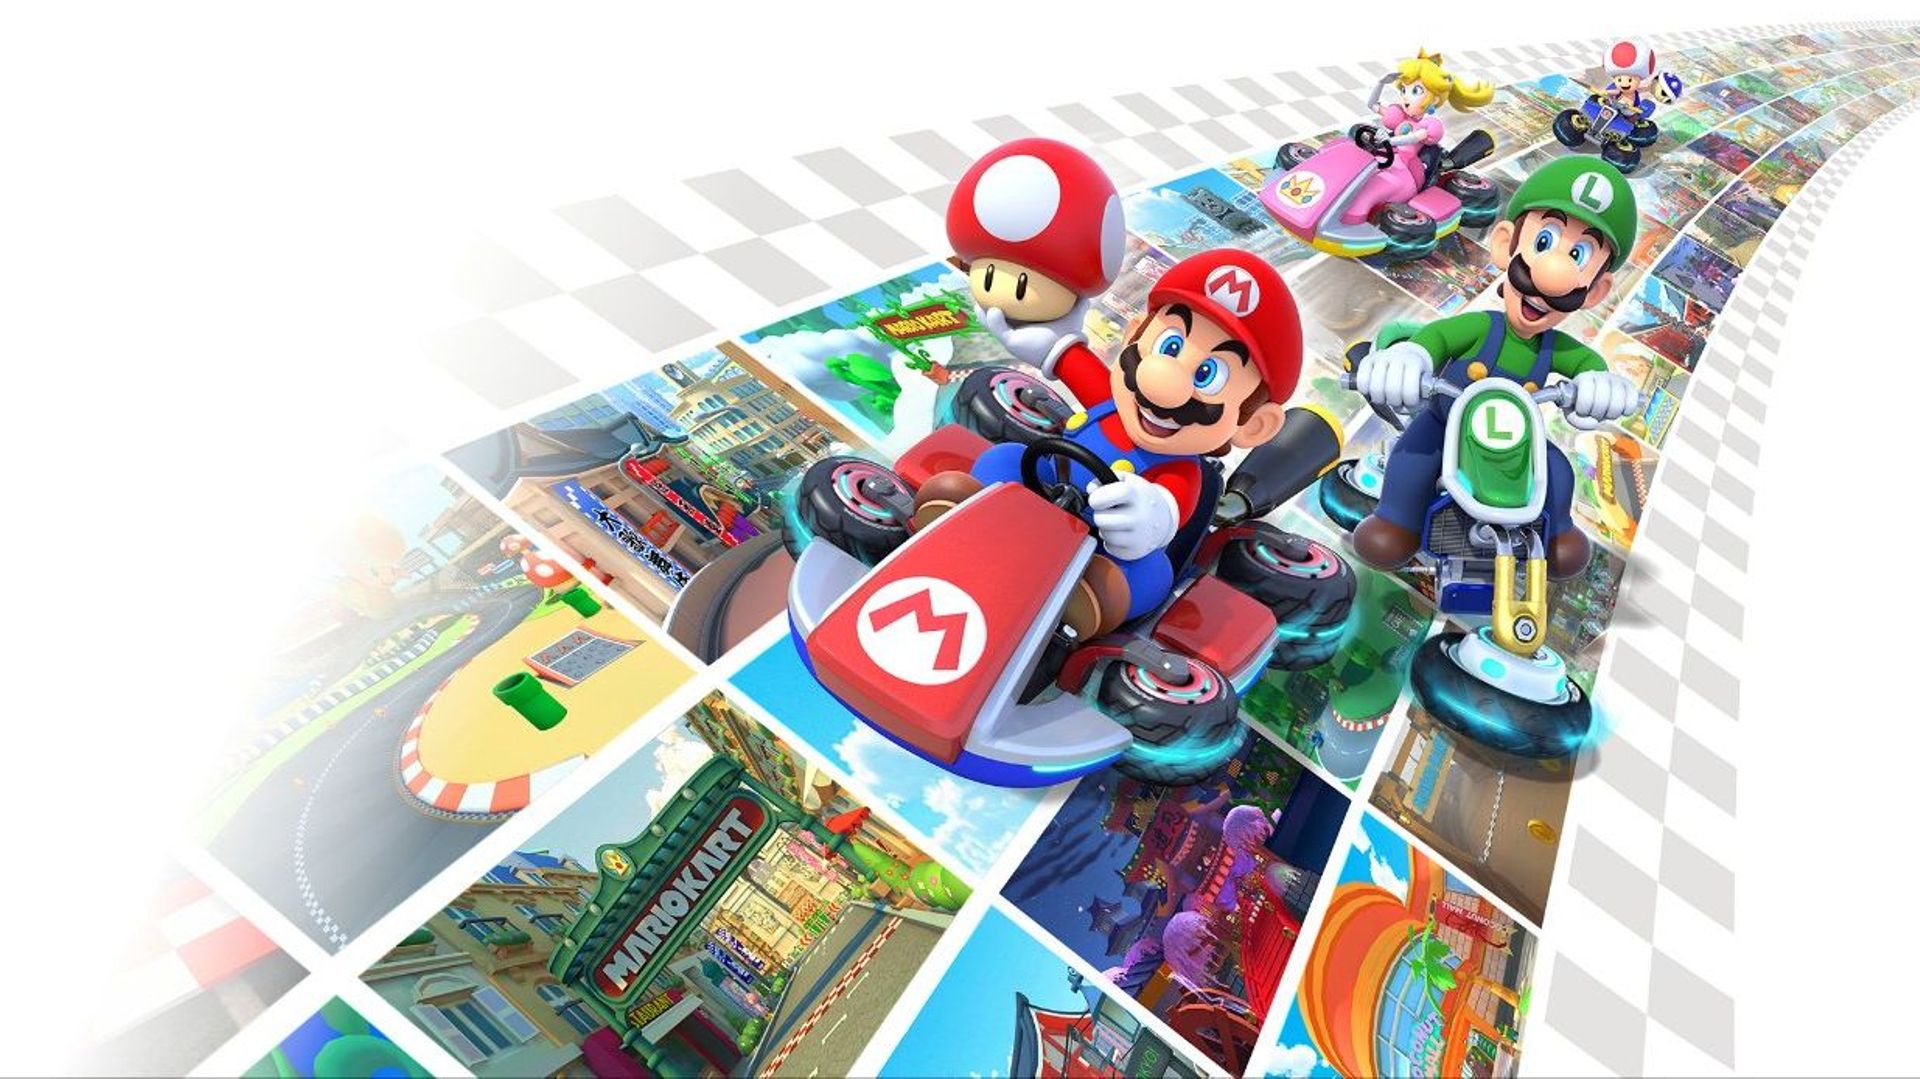 Mariokart 8 Deluxe, sorti initialement en 2014, a annoncé sortir plusieurs DLC pour continuer d'en étendre la durée de vie.